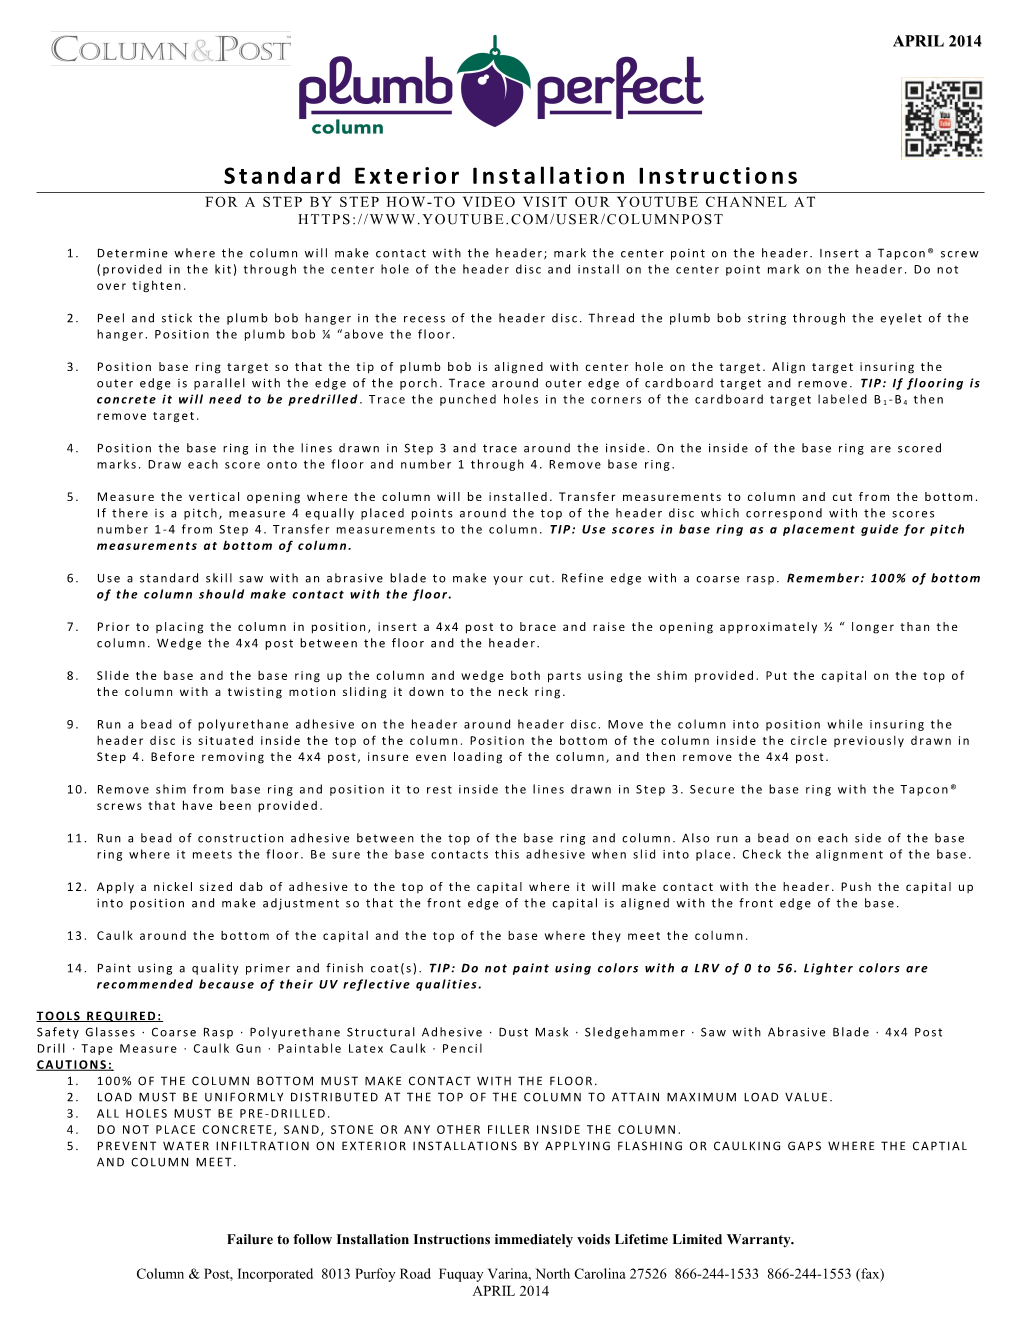 Standard Exterior Installation Instructions